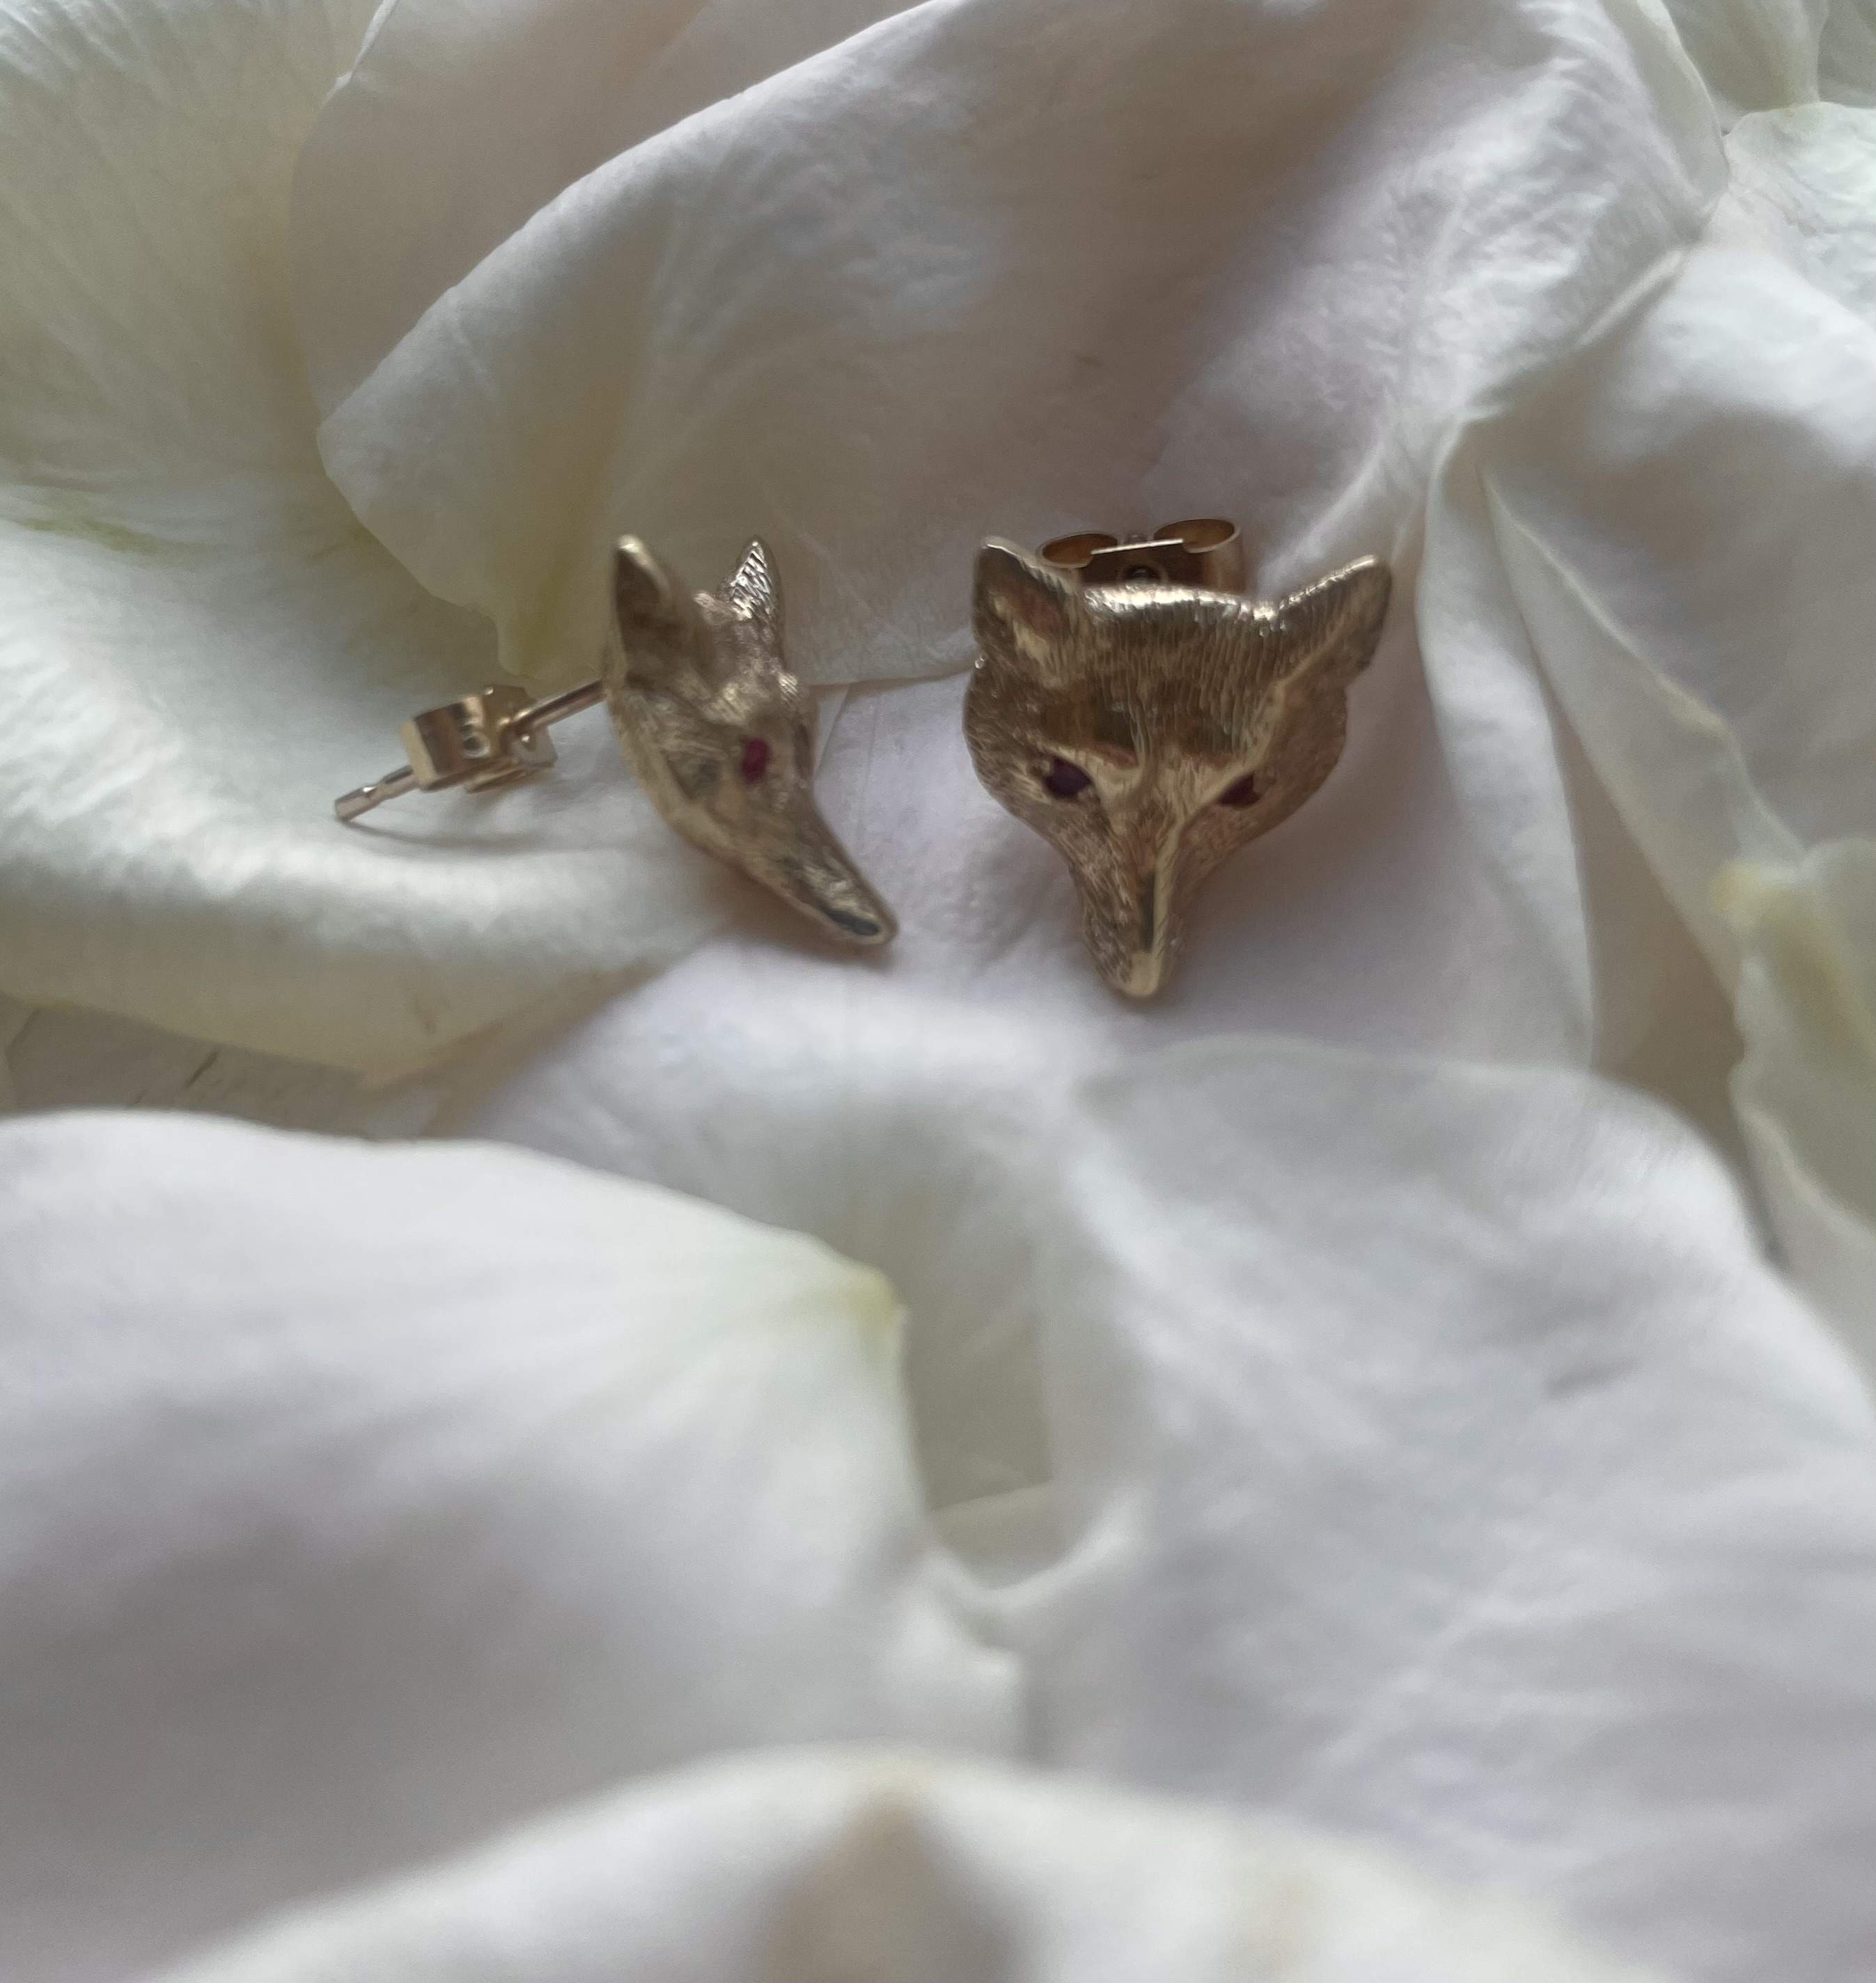 Fox earrings